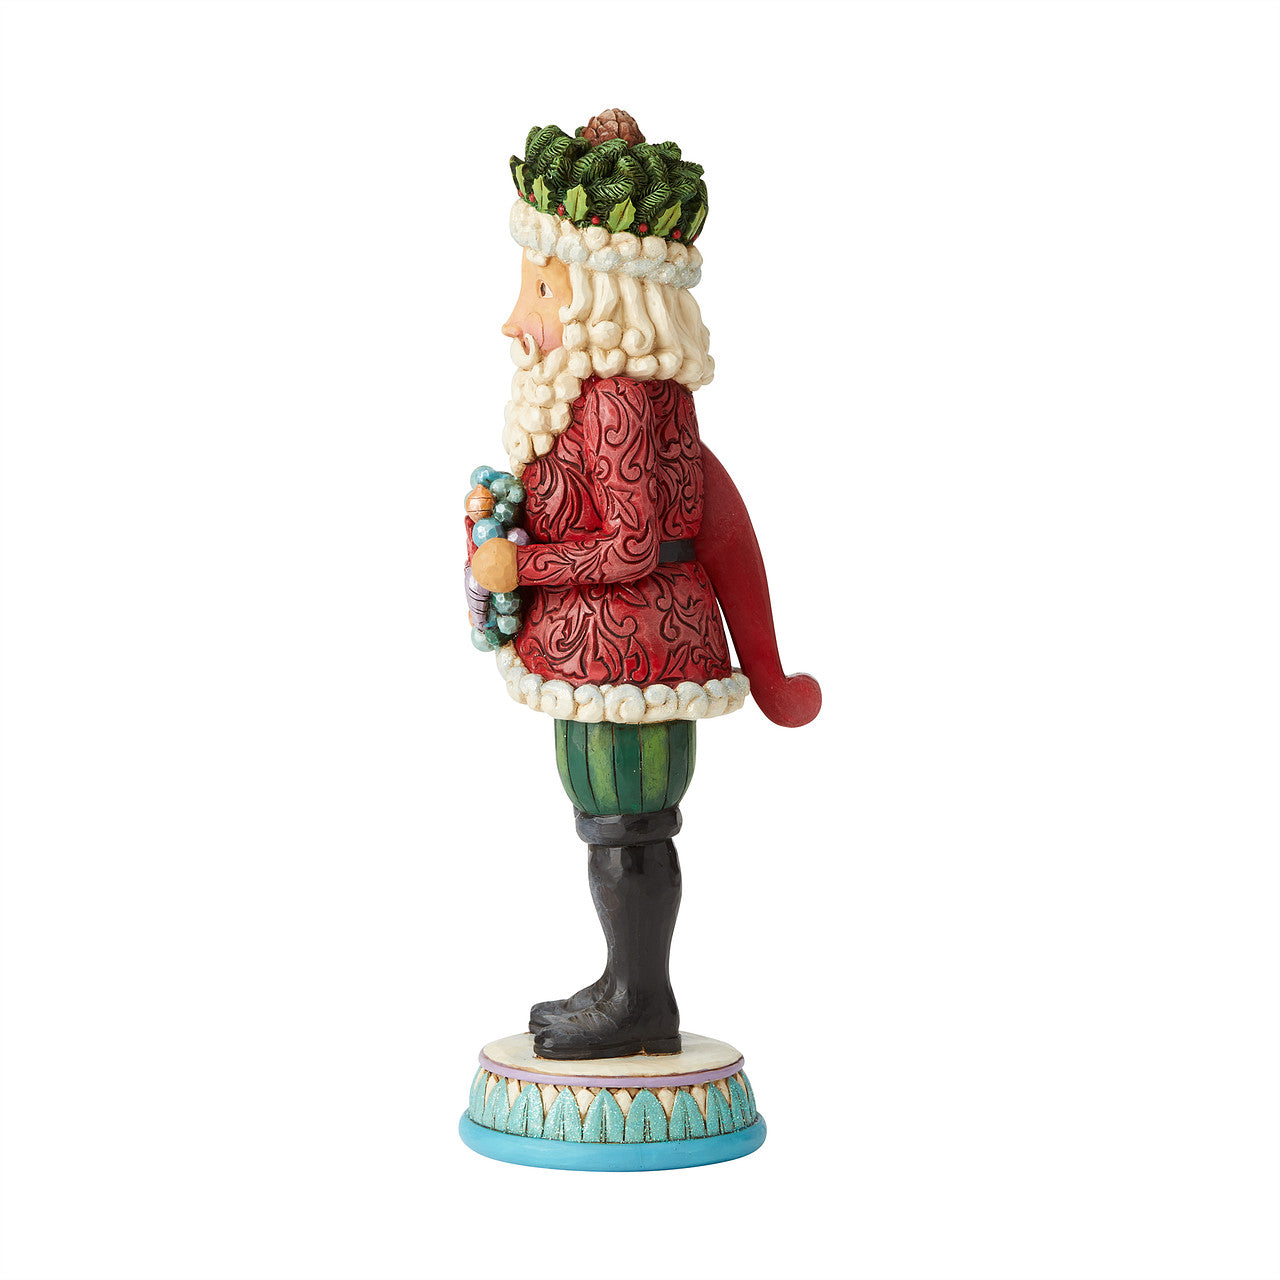 Winter's Warm Wonders - Winter Wonderland Santa Nutcracker Figurine